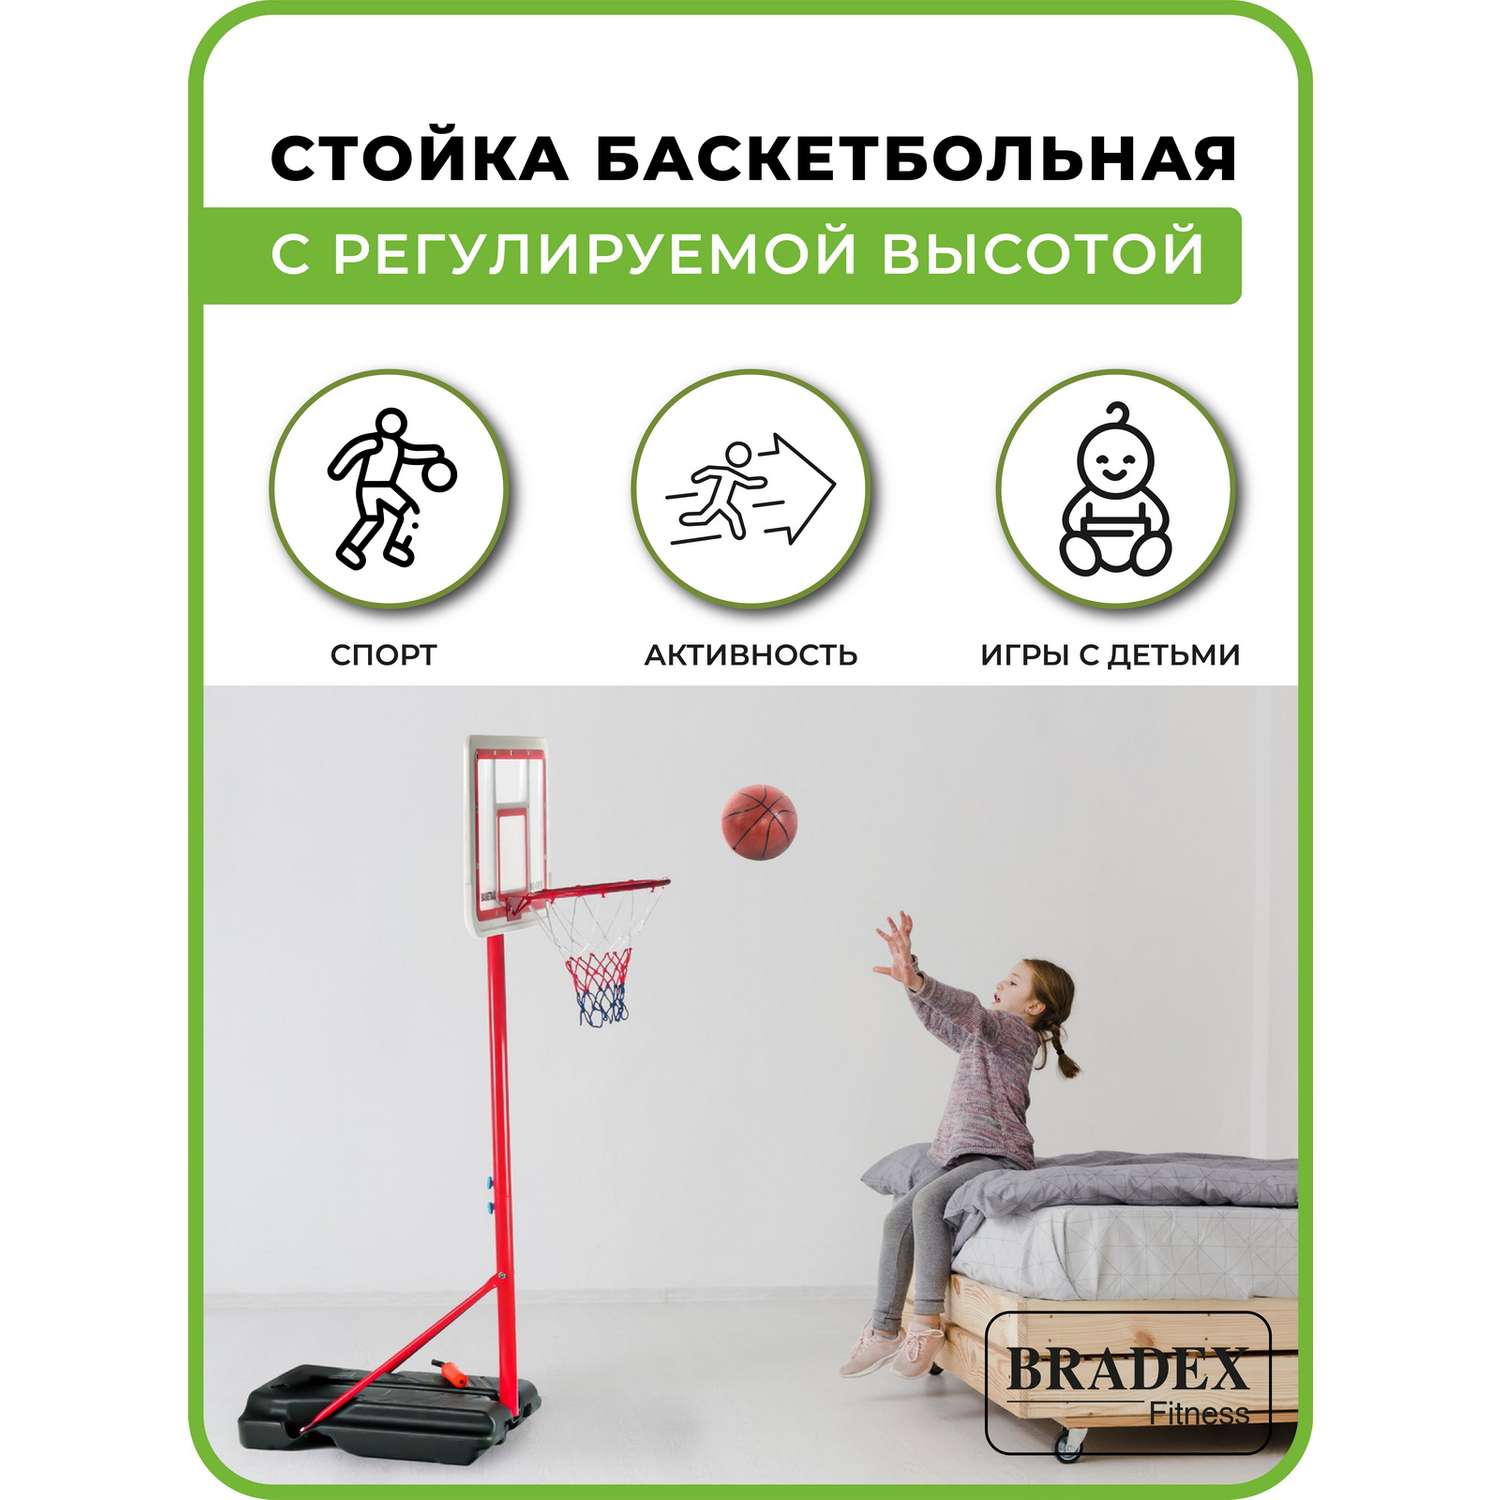 Стойка баскетбольная Bradex с регулируемой высотой - фото 3